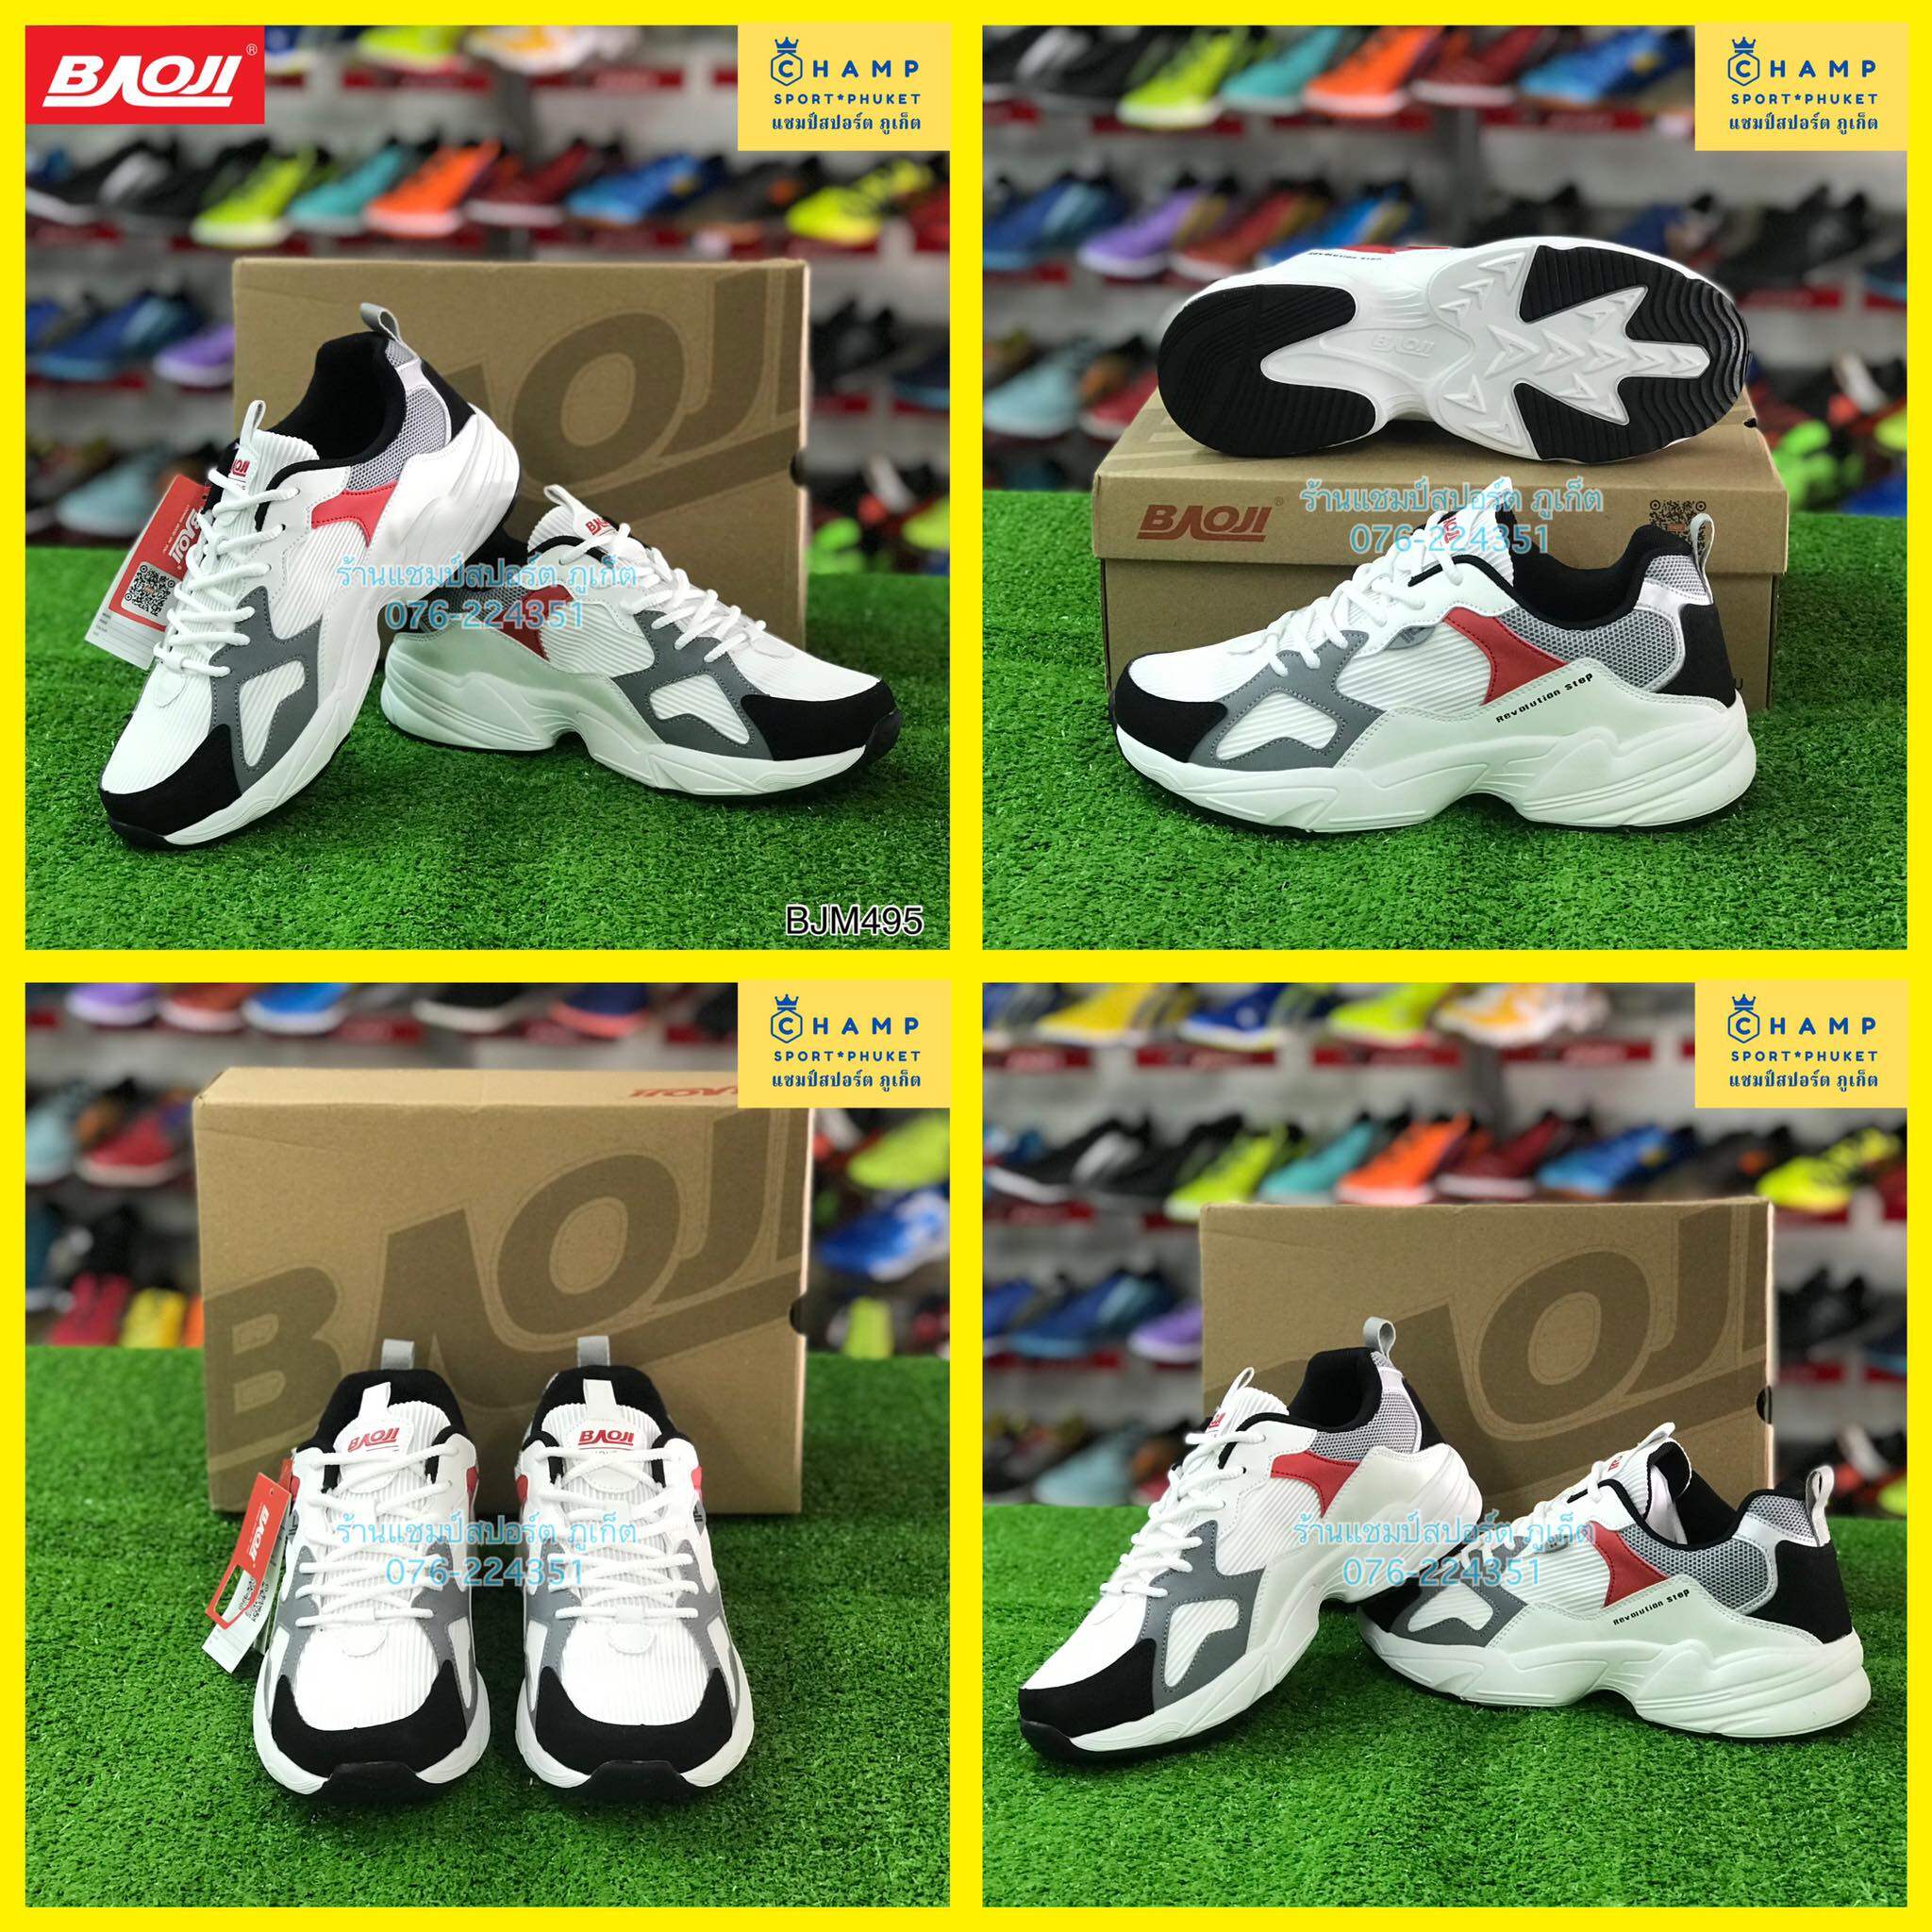 ลองดูภาพสินค้า รองเท้าผ้าใบ ผู้ชาย Baoji (ลิขสิทธ์แท้) รองเท้าใส่ลำลอง รองเท้าวิ่ง รองเท้าออกกำลังกาย รองเท้าใส่เล่นกีฬา